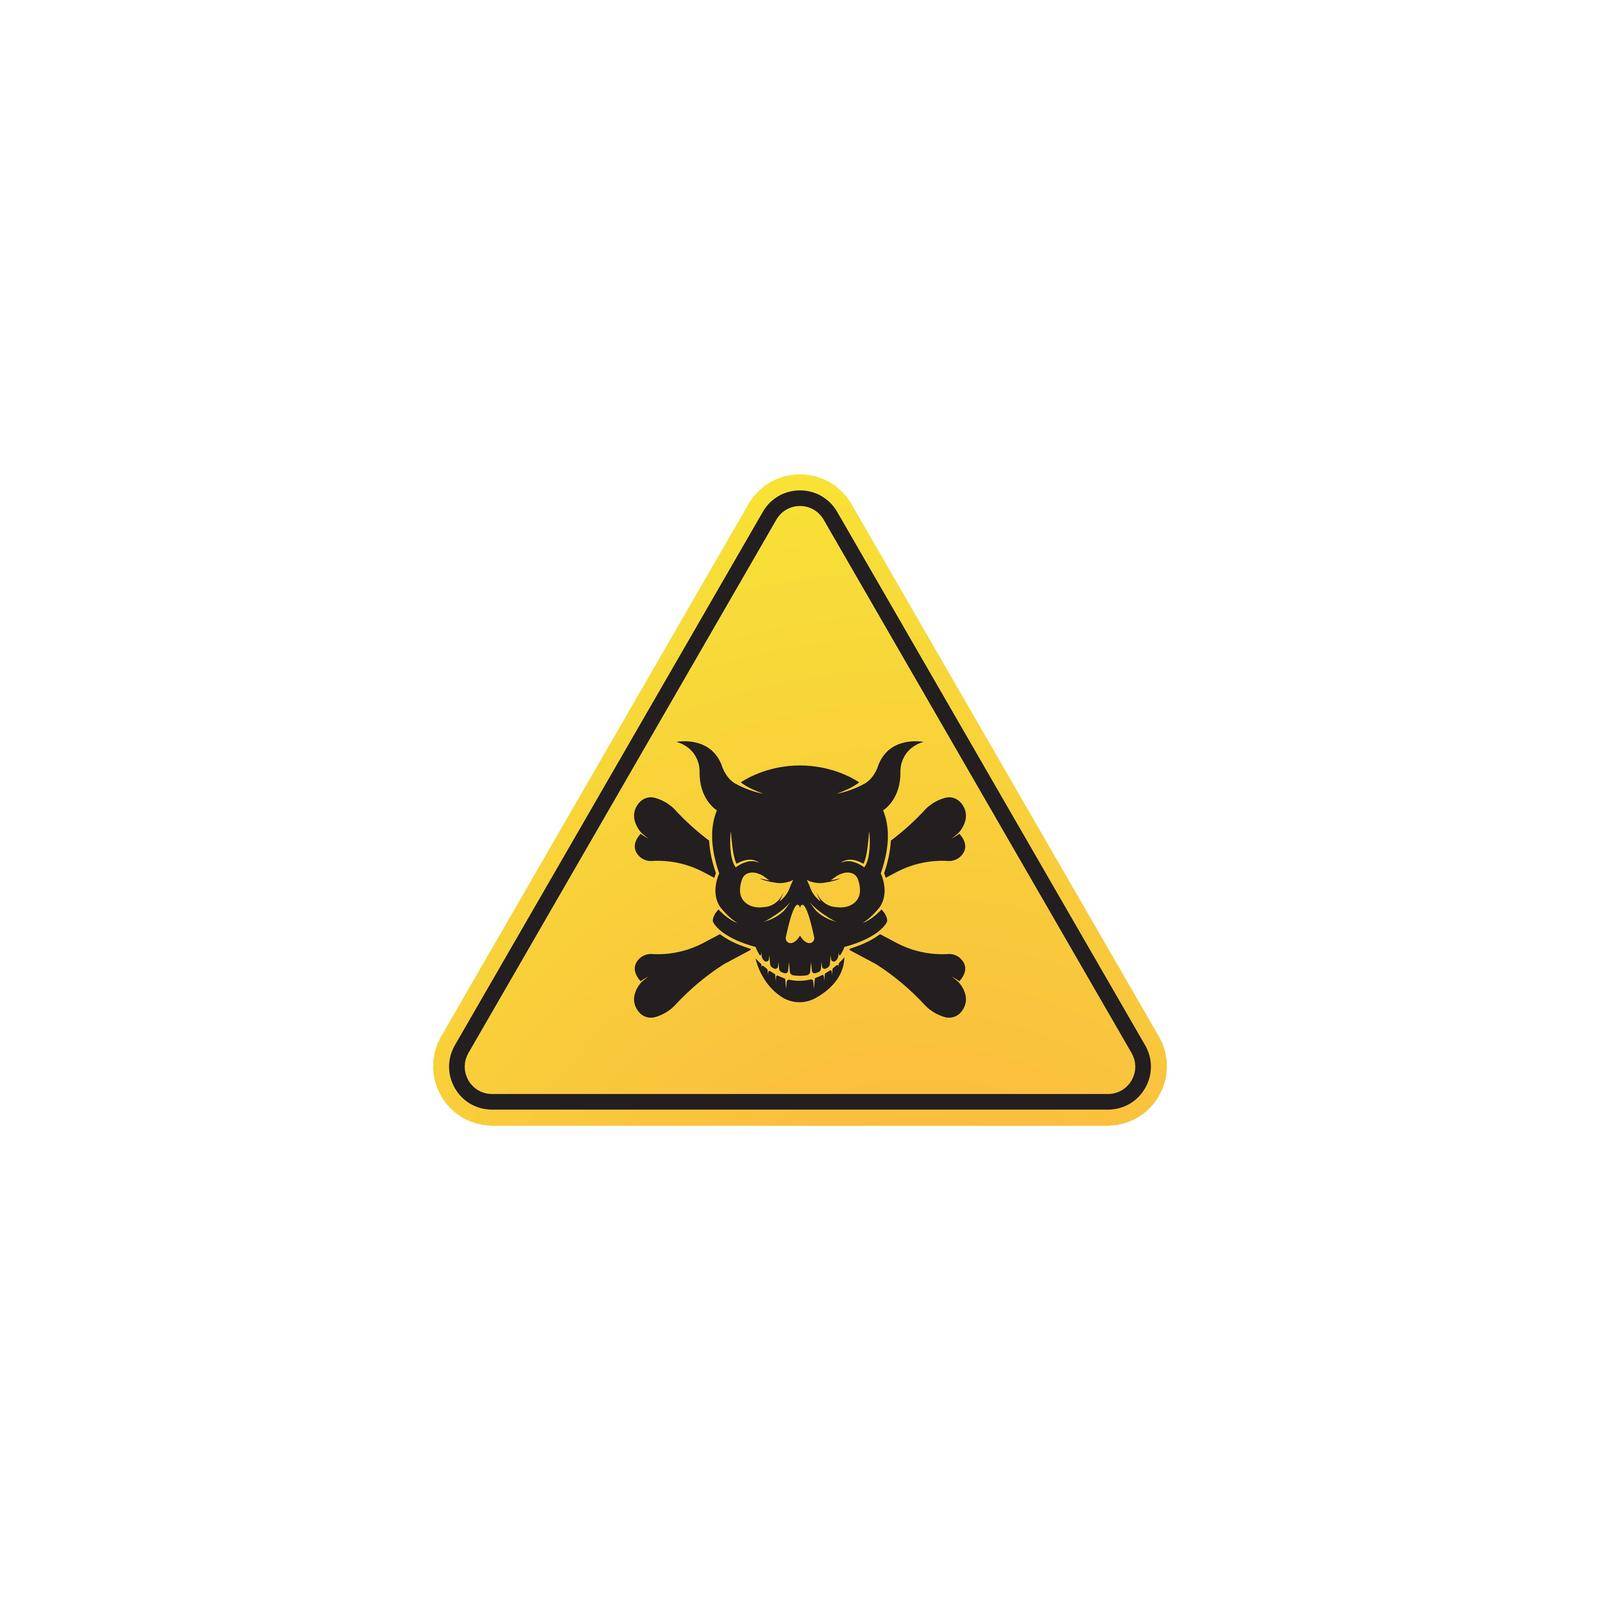 Skull Danger icon vector template